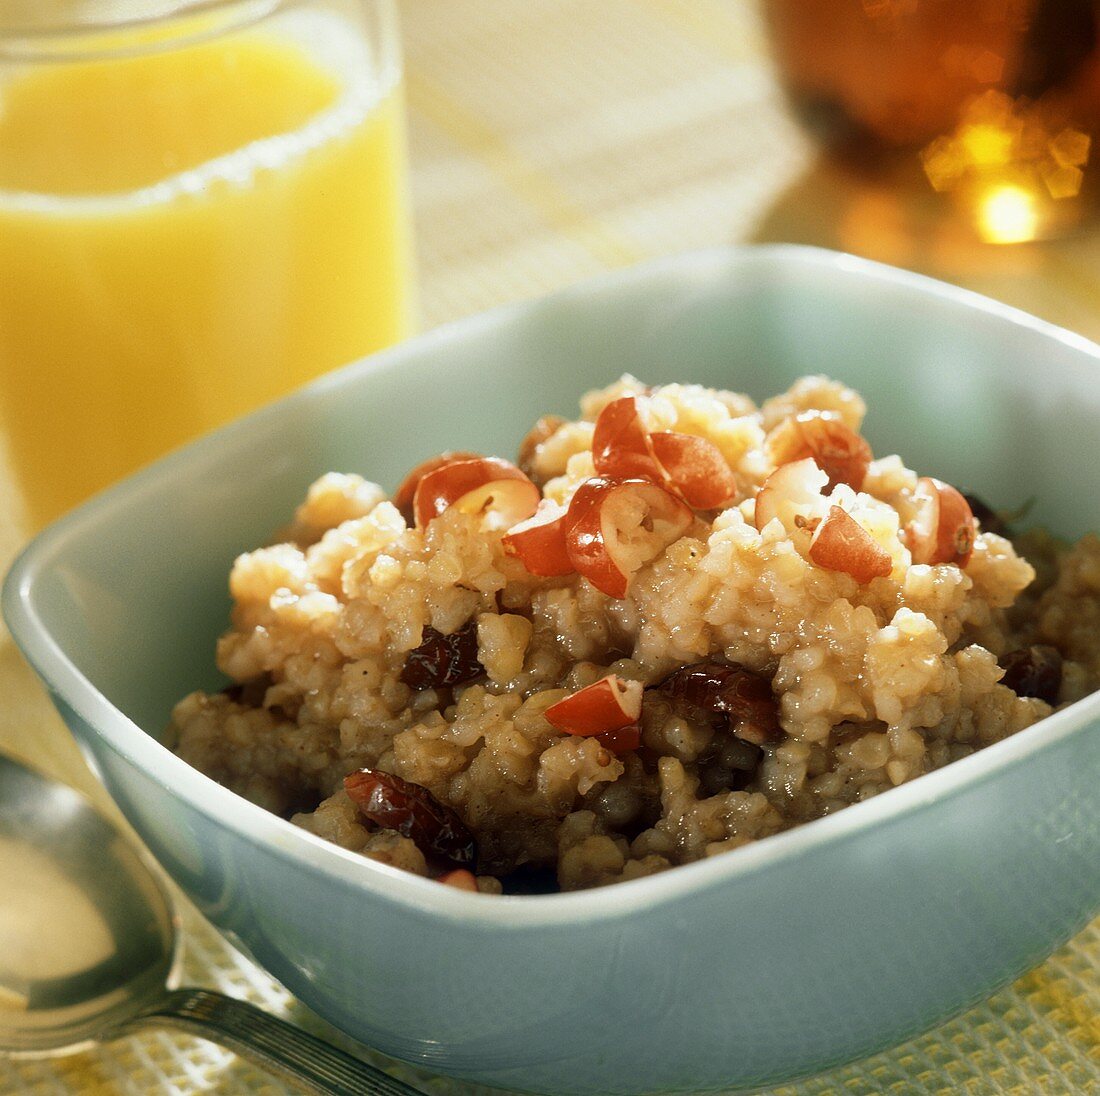 Porridge with raisins and red grapes; orange juice